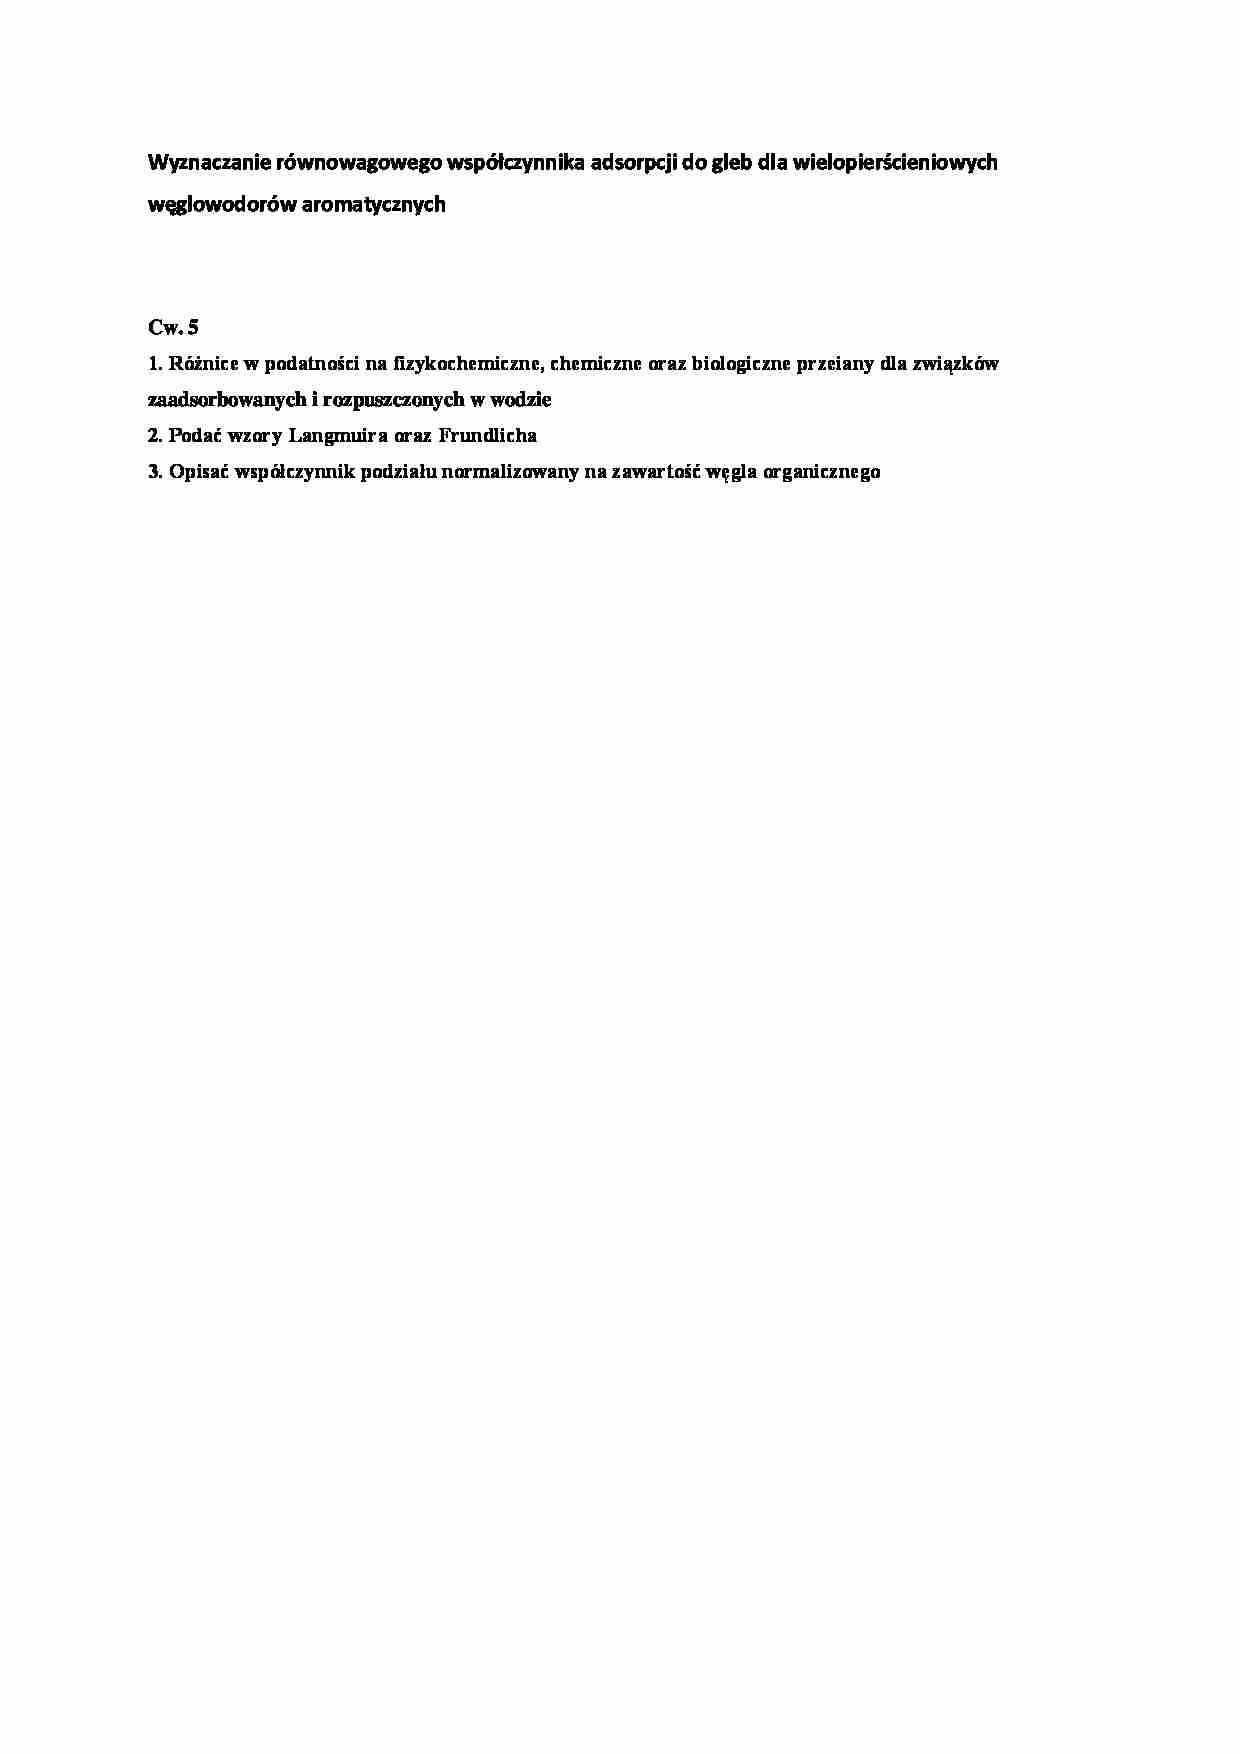 Wyznaczanie równowagowego współczynnika adsorpcji do gleb - strona 1